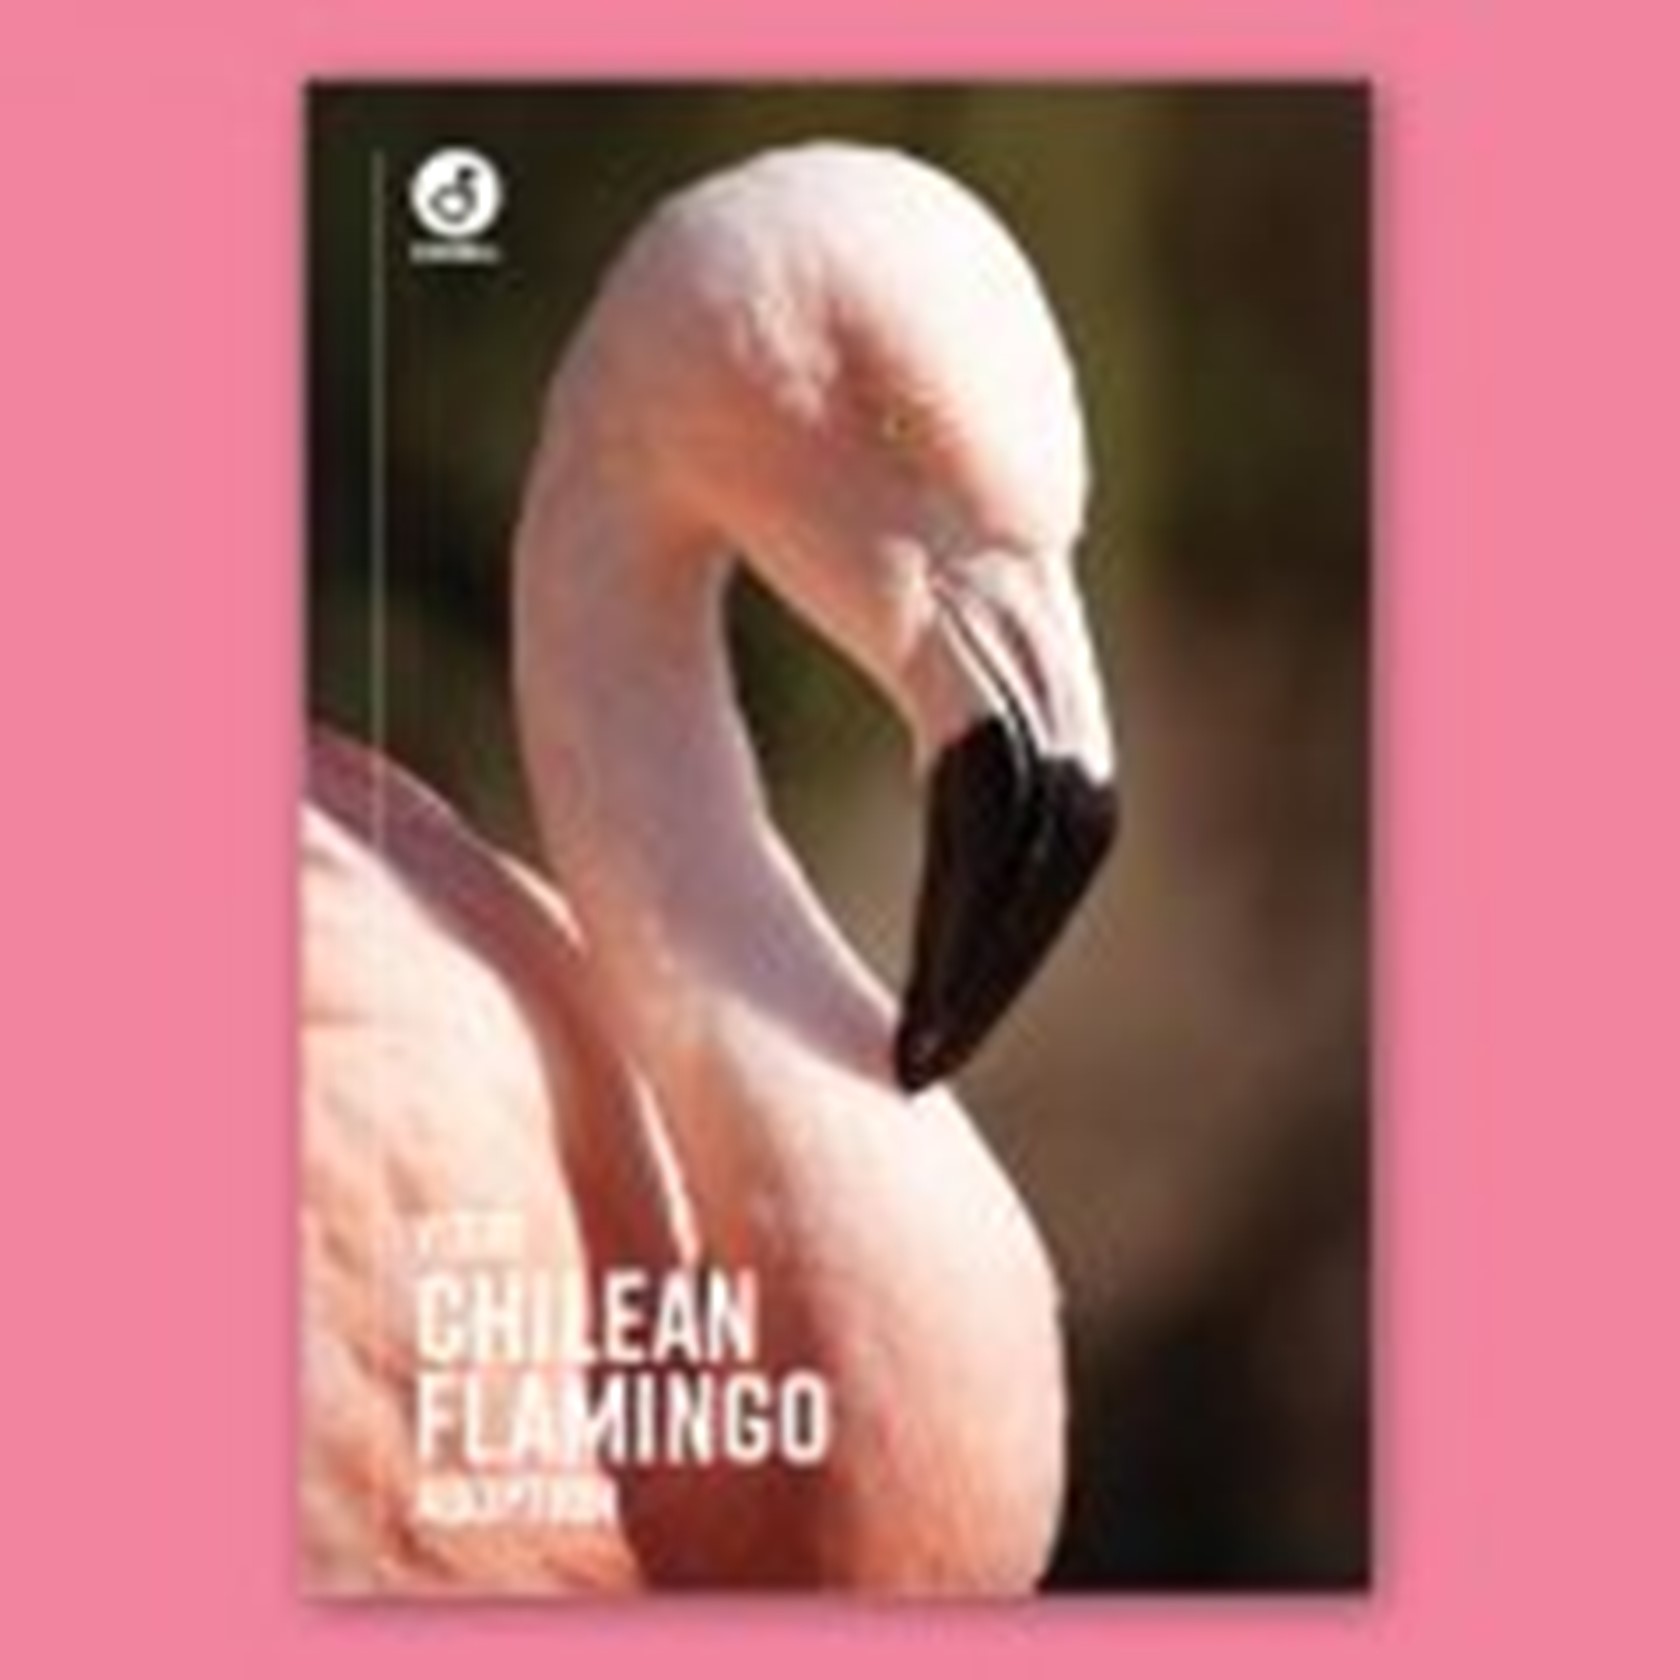 Digital Adoption - Flamingo